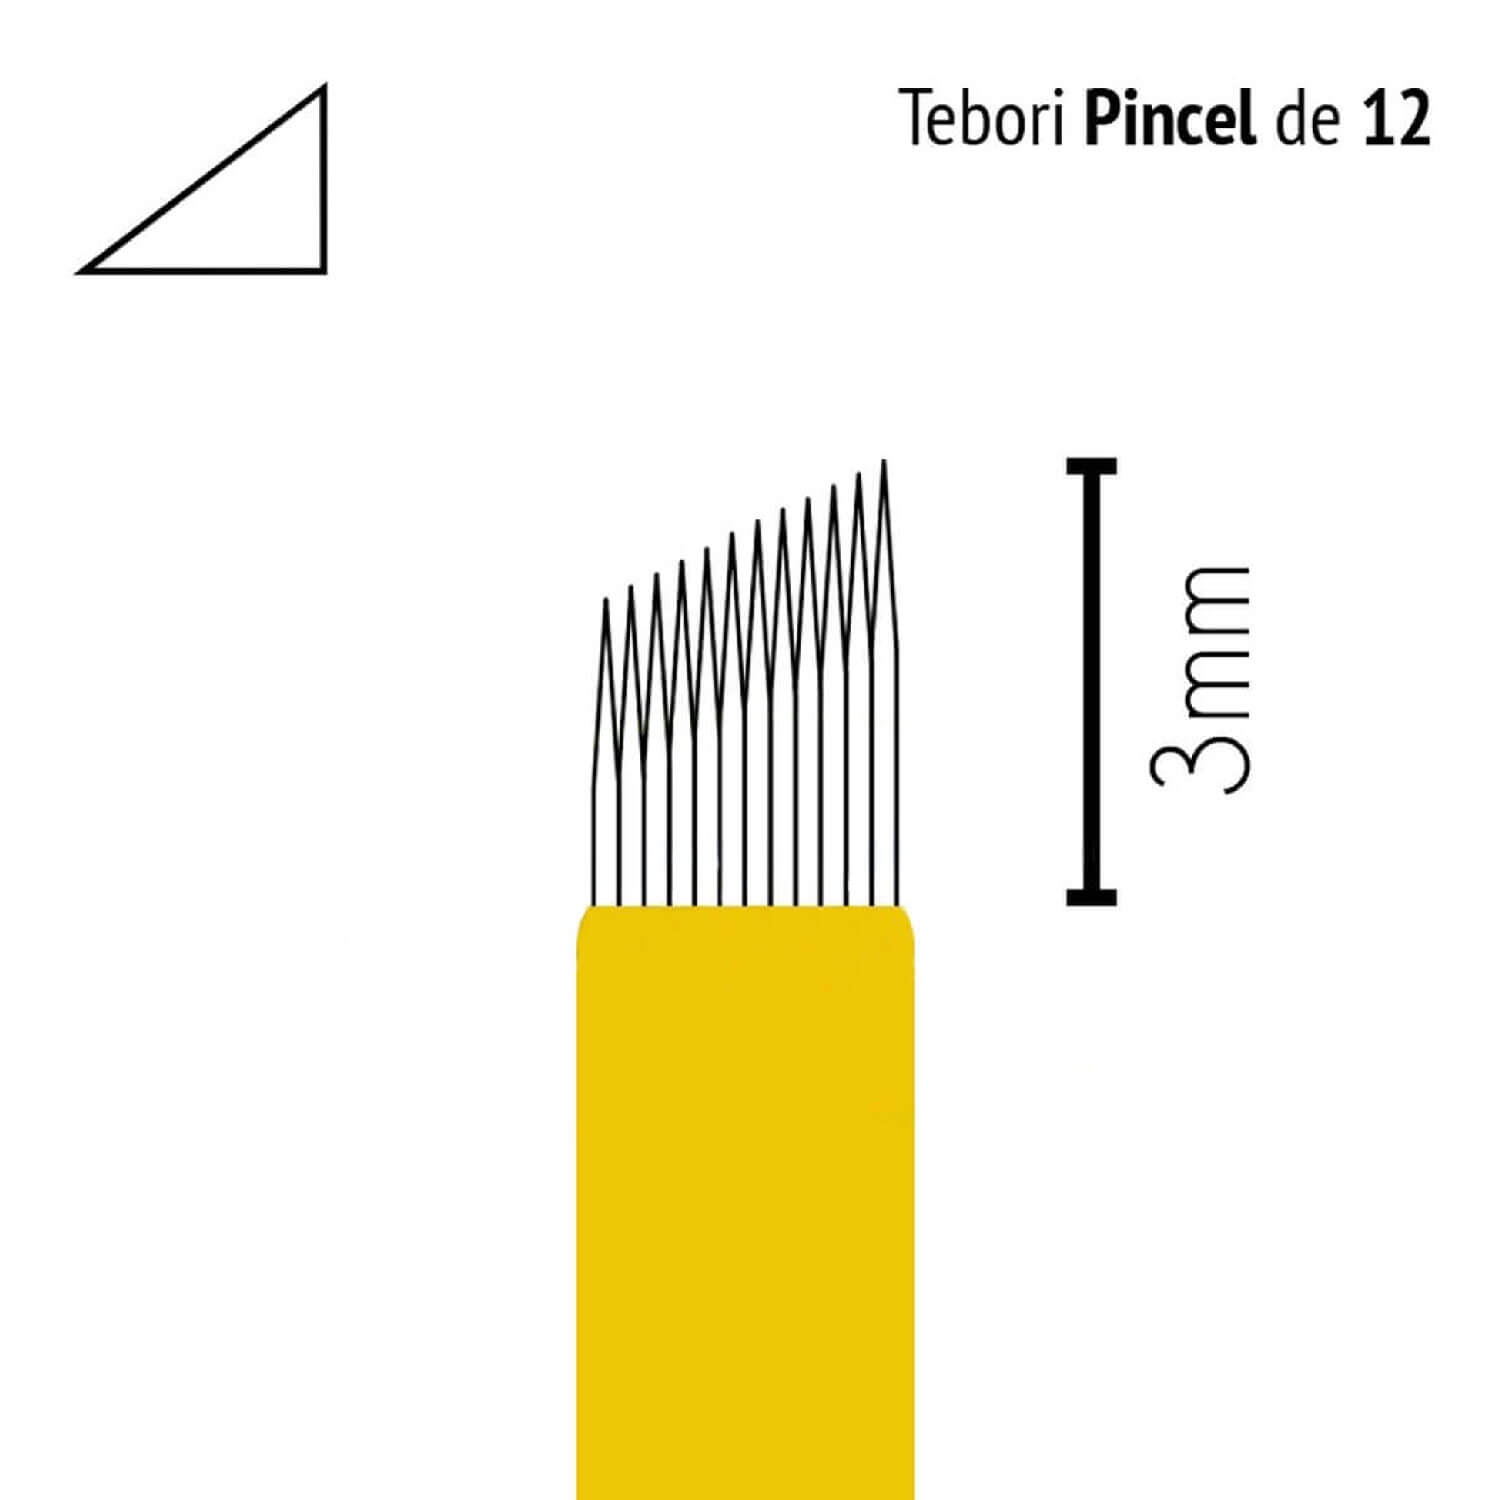 Lâmina Flox Tebori Pincel 12 Pts c/ Anvisa - Kit 5 Un.